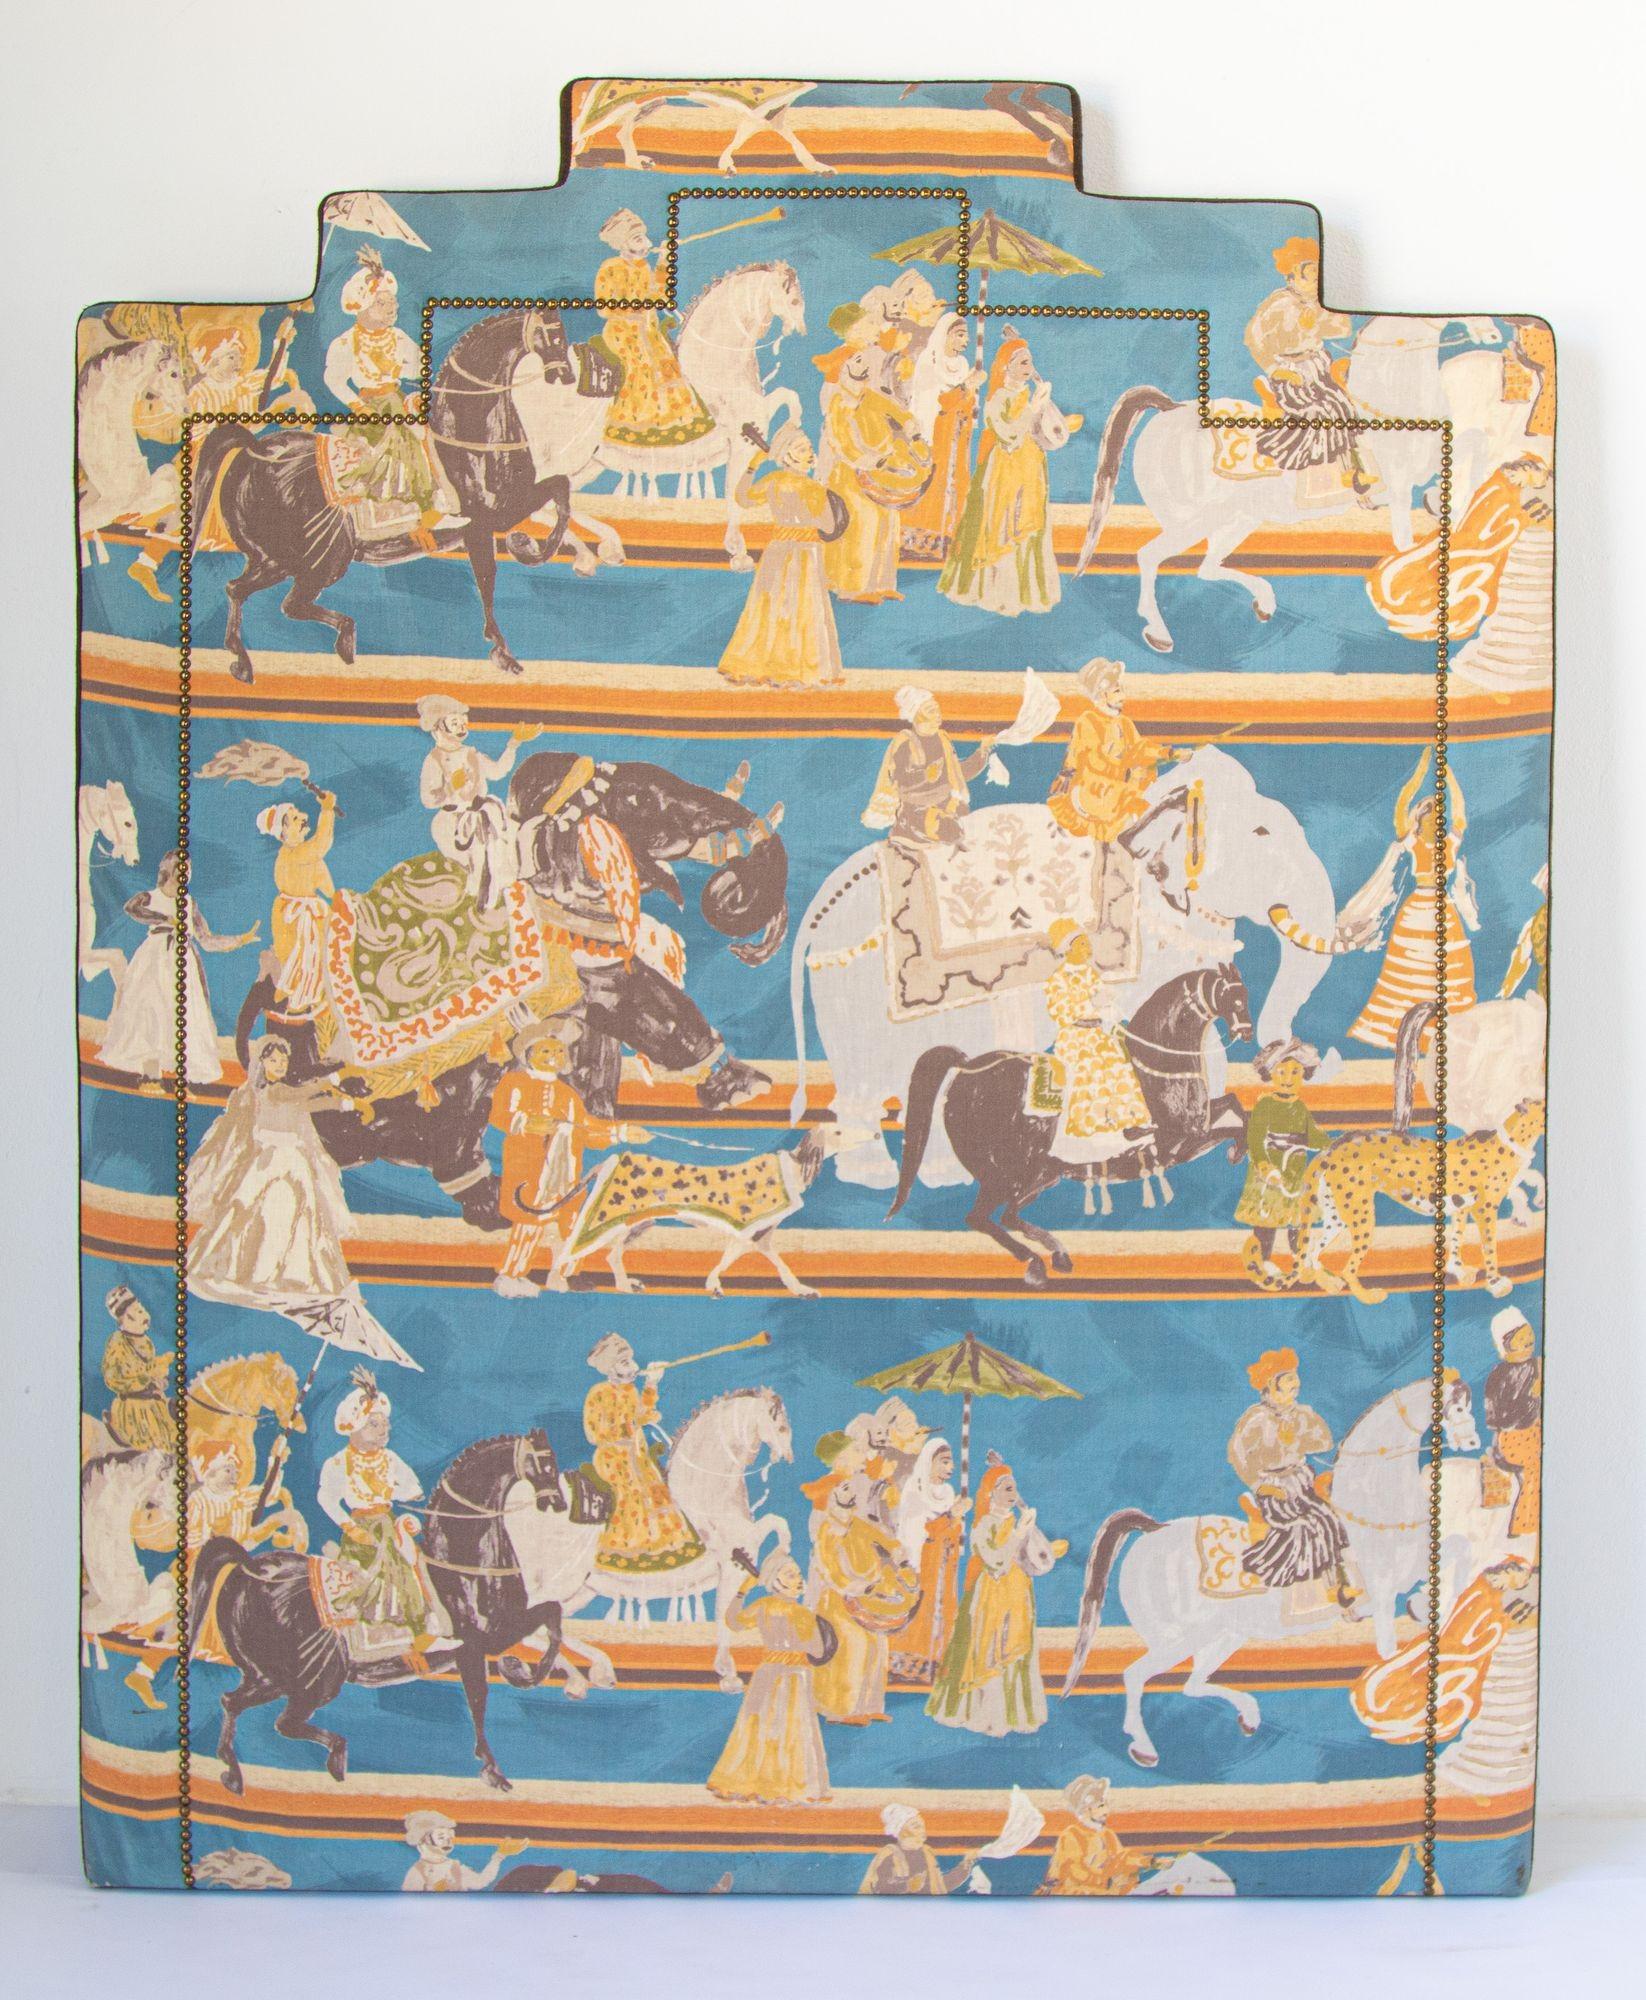 Tête de lit tapissée orientale de luxe avec scène moghole Maharajahs sur cheval et éléphants, Inde.
Cette magnifique tête de lit rembourrée de luxe à décor Jaipur Rajput est ornée de clous. 
Tête de lit arquée moghole de luxe tapissée de tissu